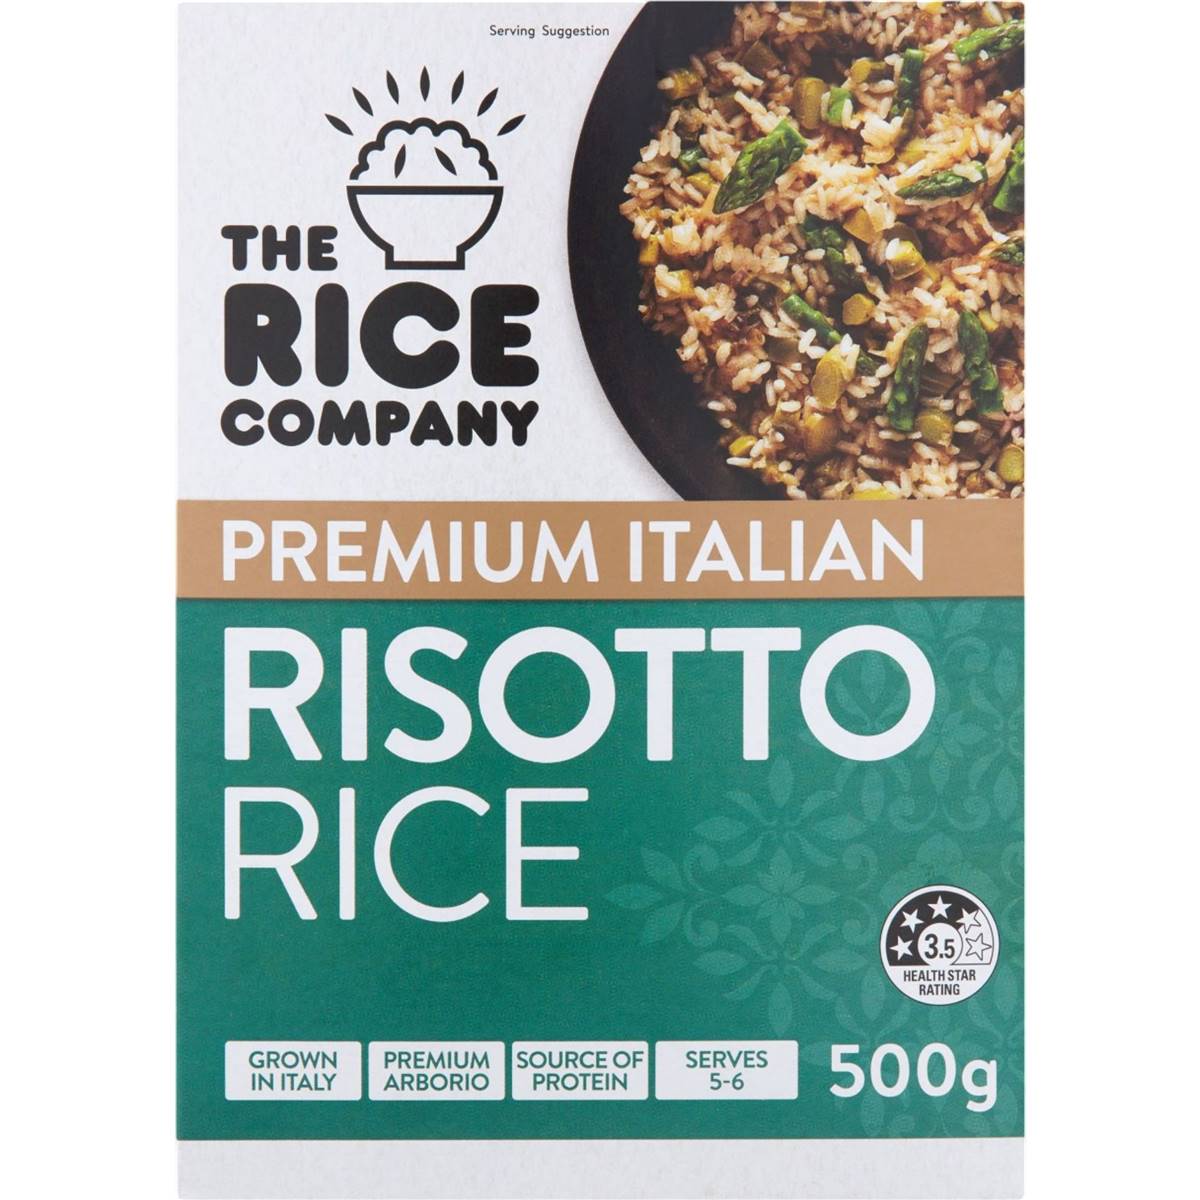 Calories in Trc Italian Risotto Rice 500g The Rice Company Italian Risotto Rice